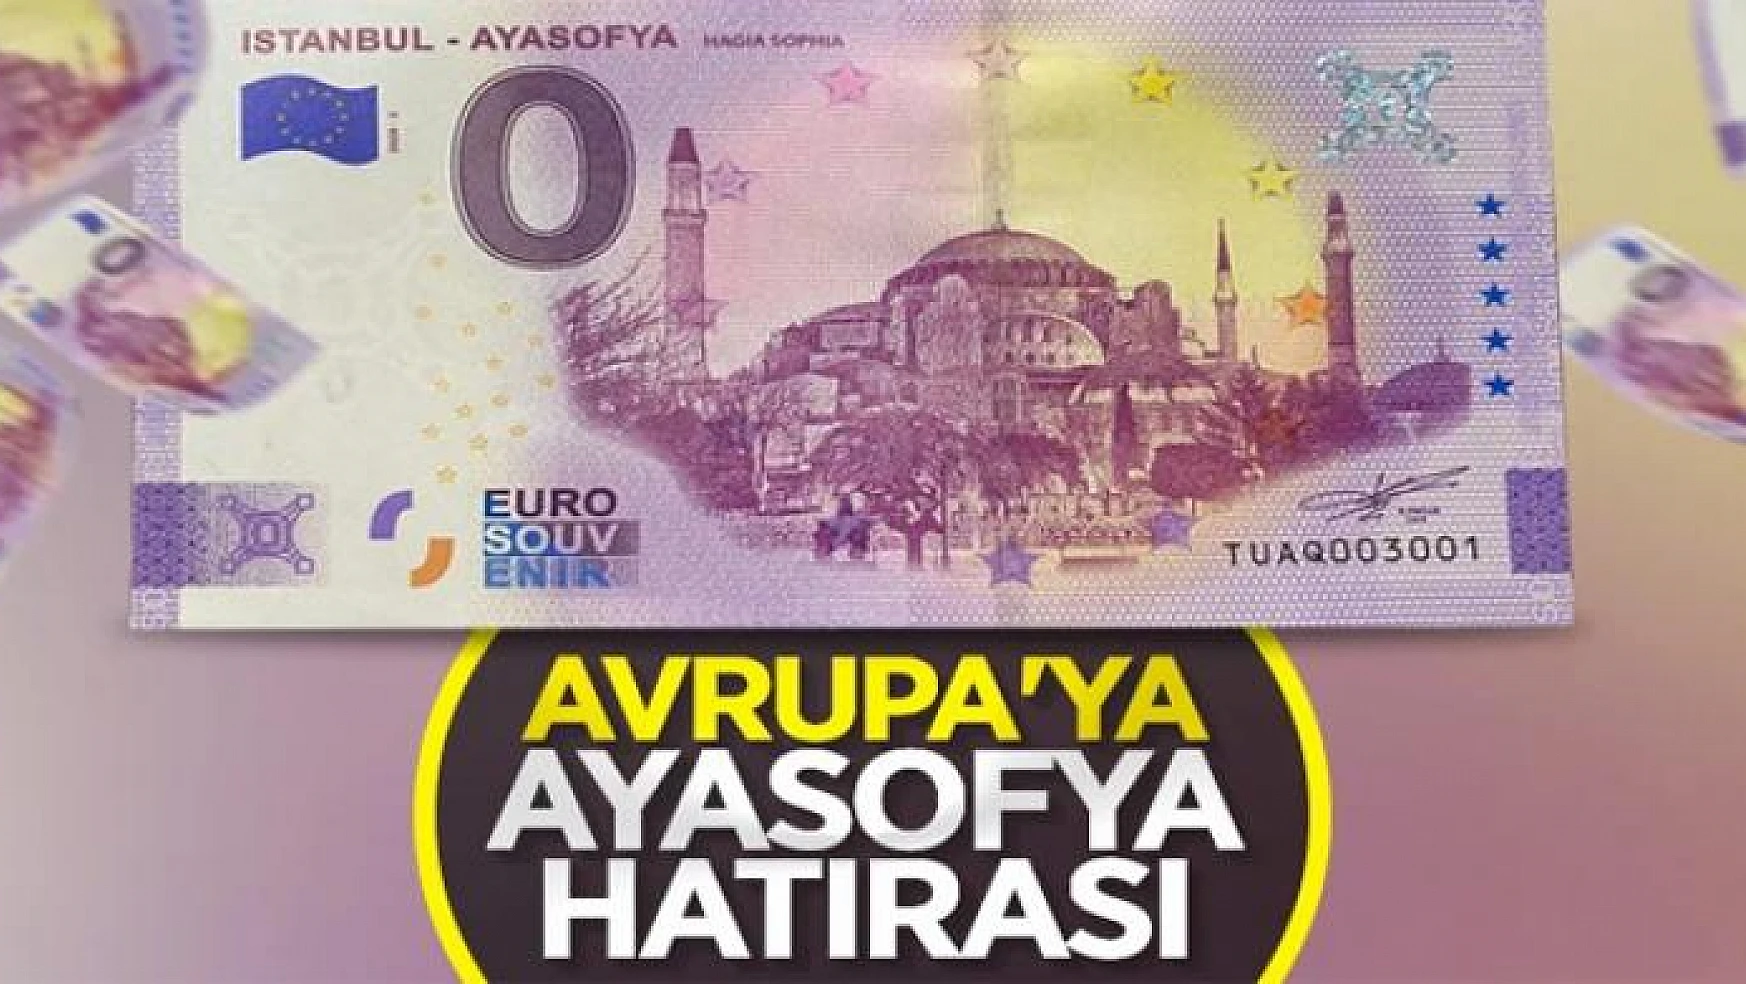 Ayasofya Camii, hatıra ve tanıtım amacıyla basılan Euro'da yer aldı